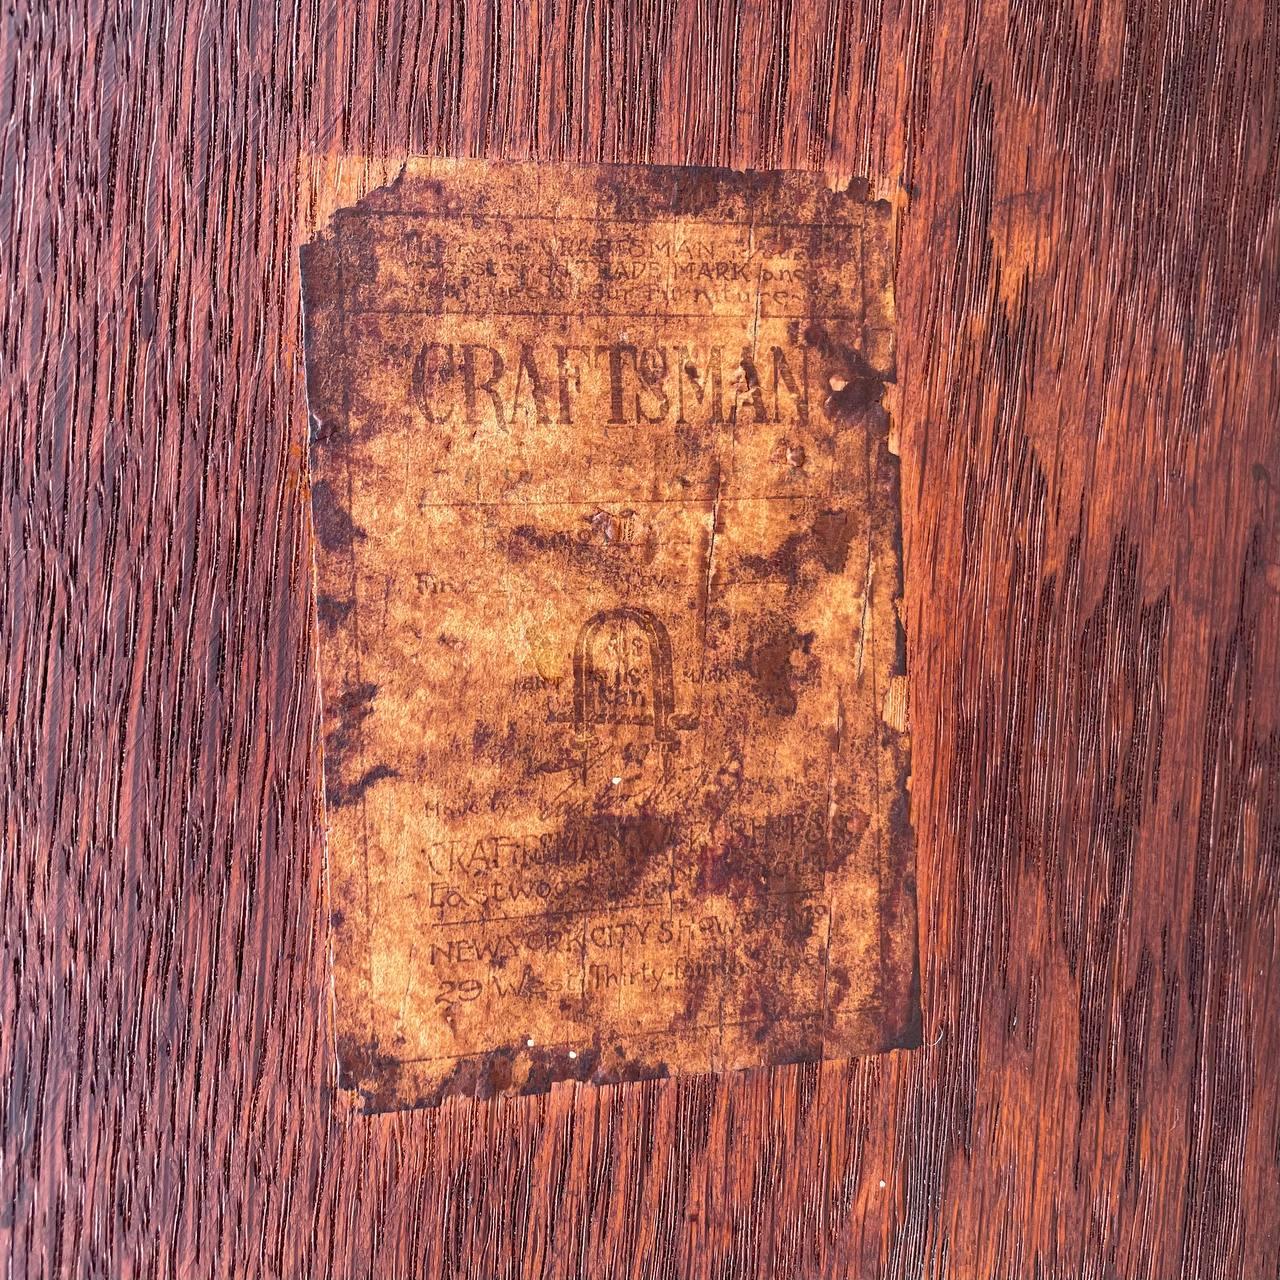 Signed Antique Mission Oak Craftsman Bookshelf Rack by Stickley, Model 74 6